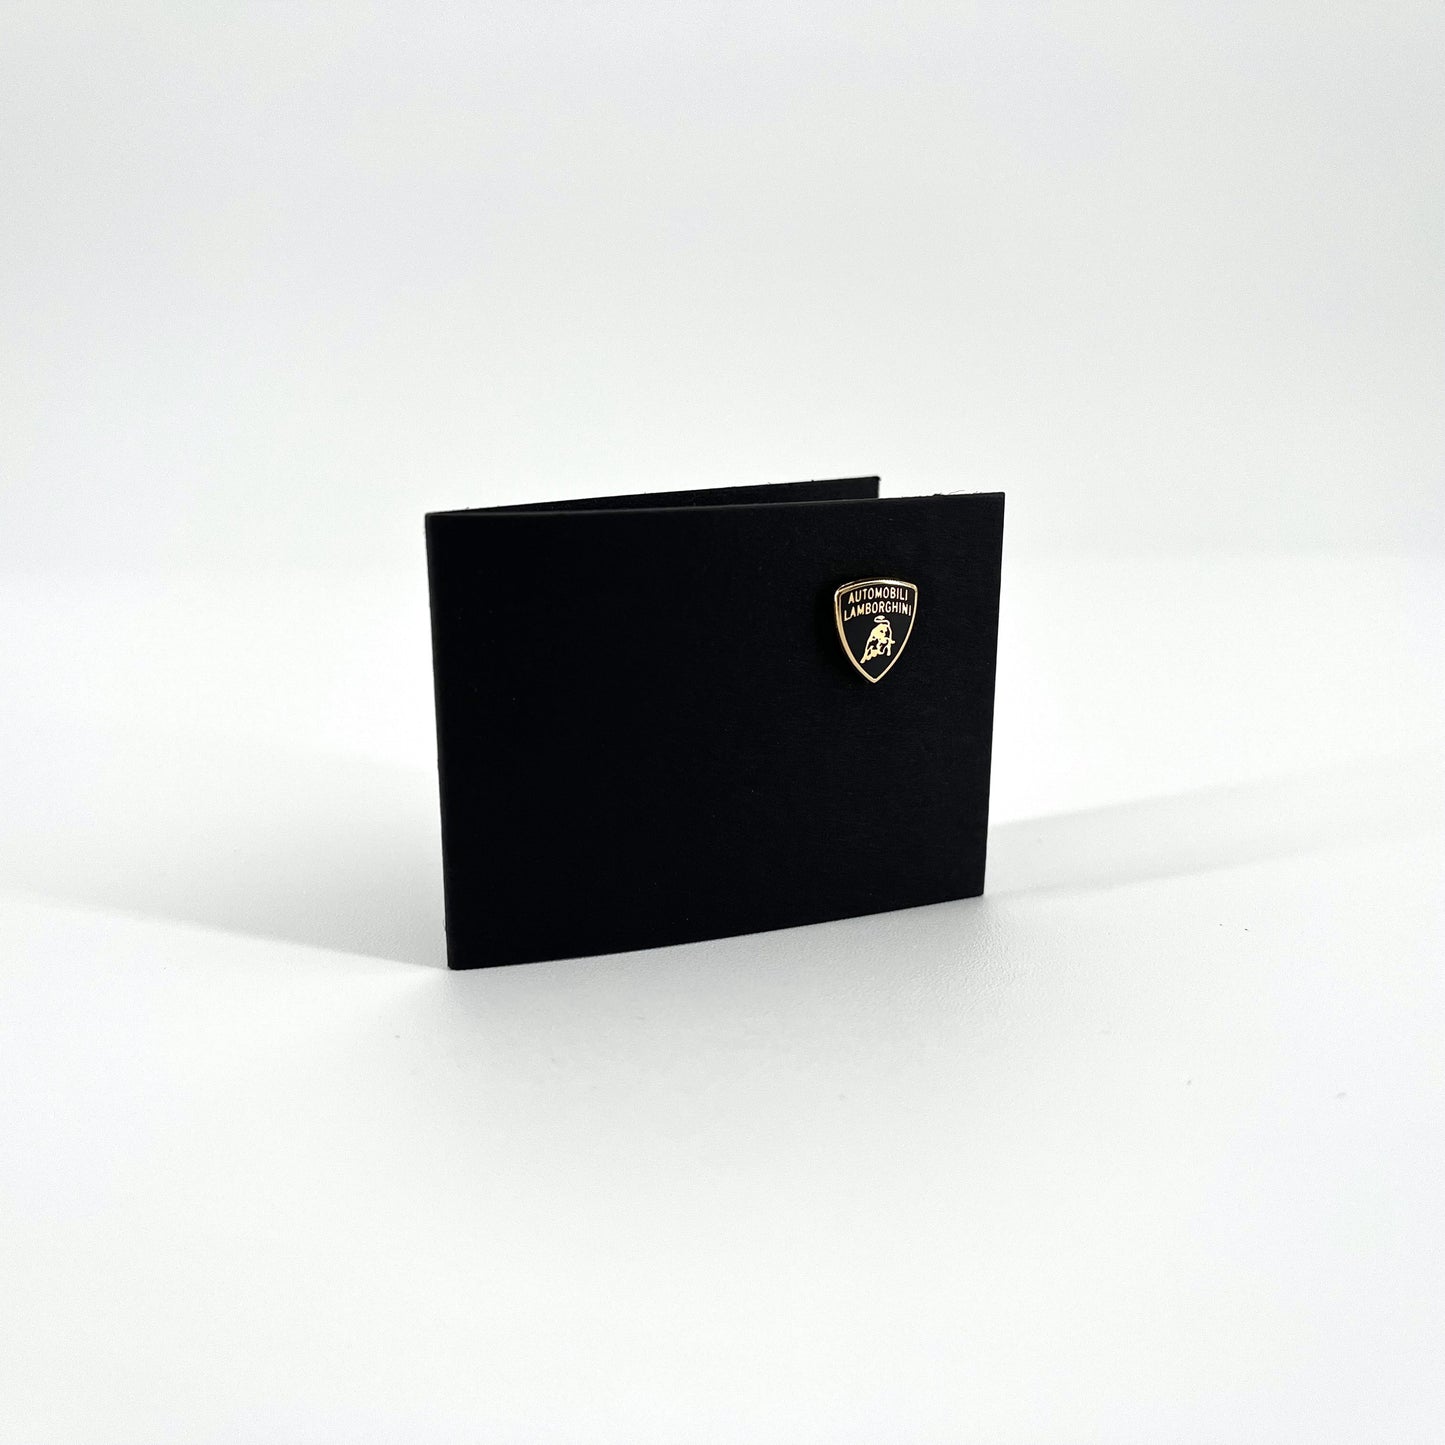 Lamborghini Gold Shield Pin Small